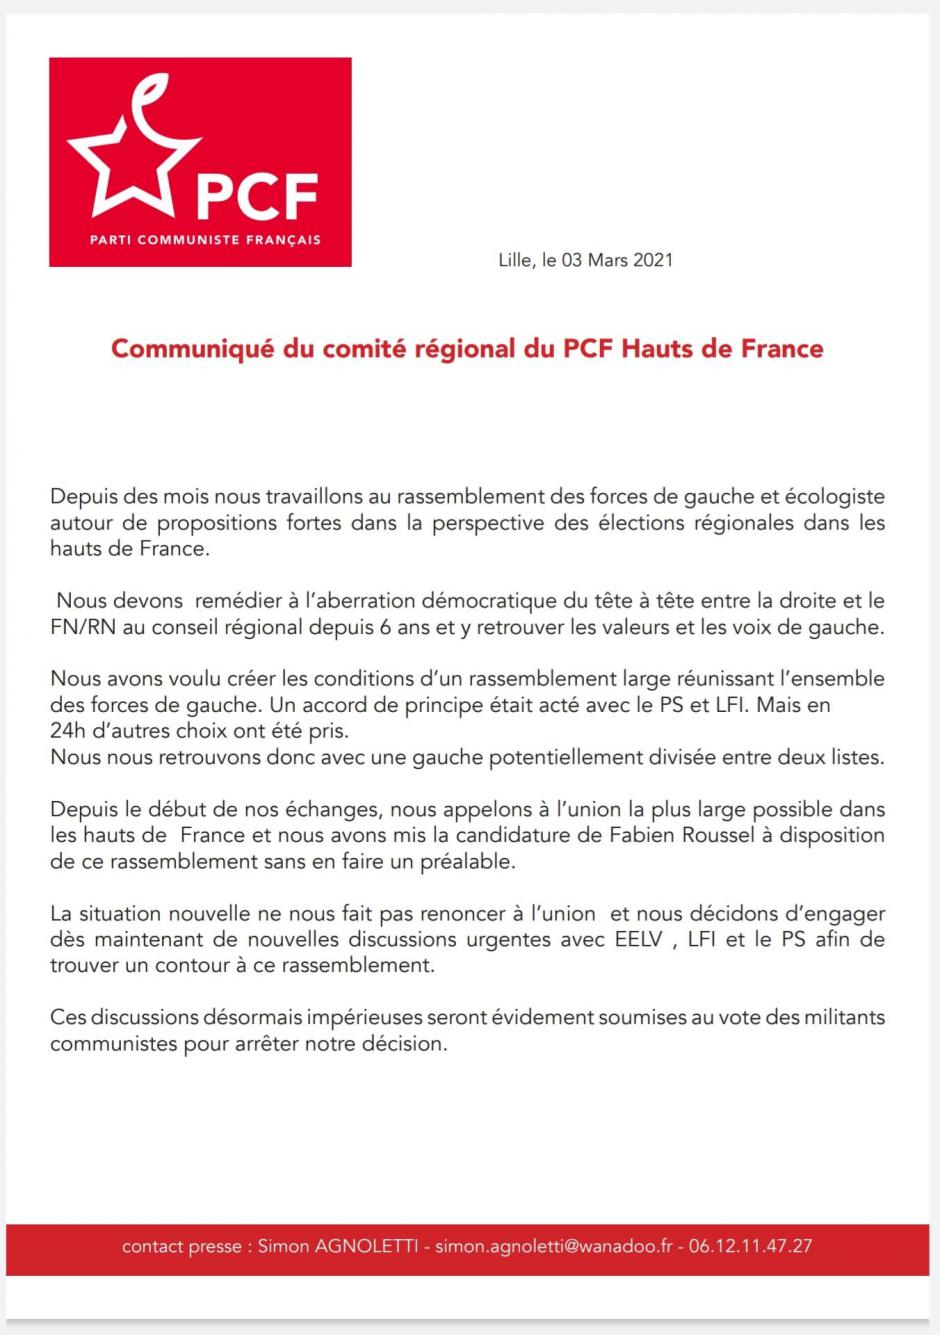 Le Comité régional du PCF Hauts-de-France : « Nous ne renonçons pas au rassemblement le plus large possible pour les élections régionales » - 3 mars 2021